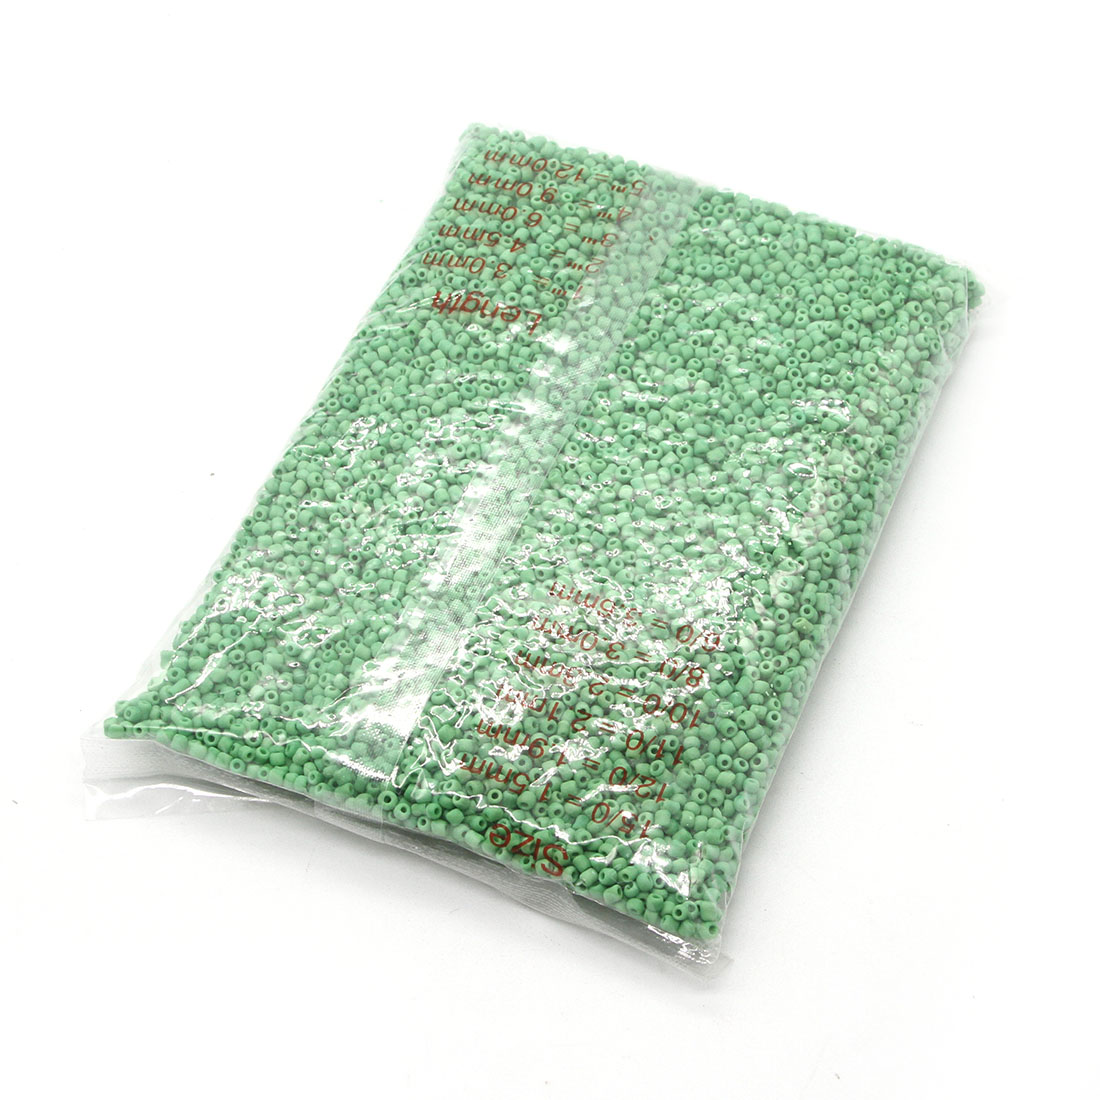 Grass green 4mm 4500 packs